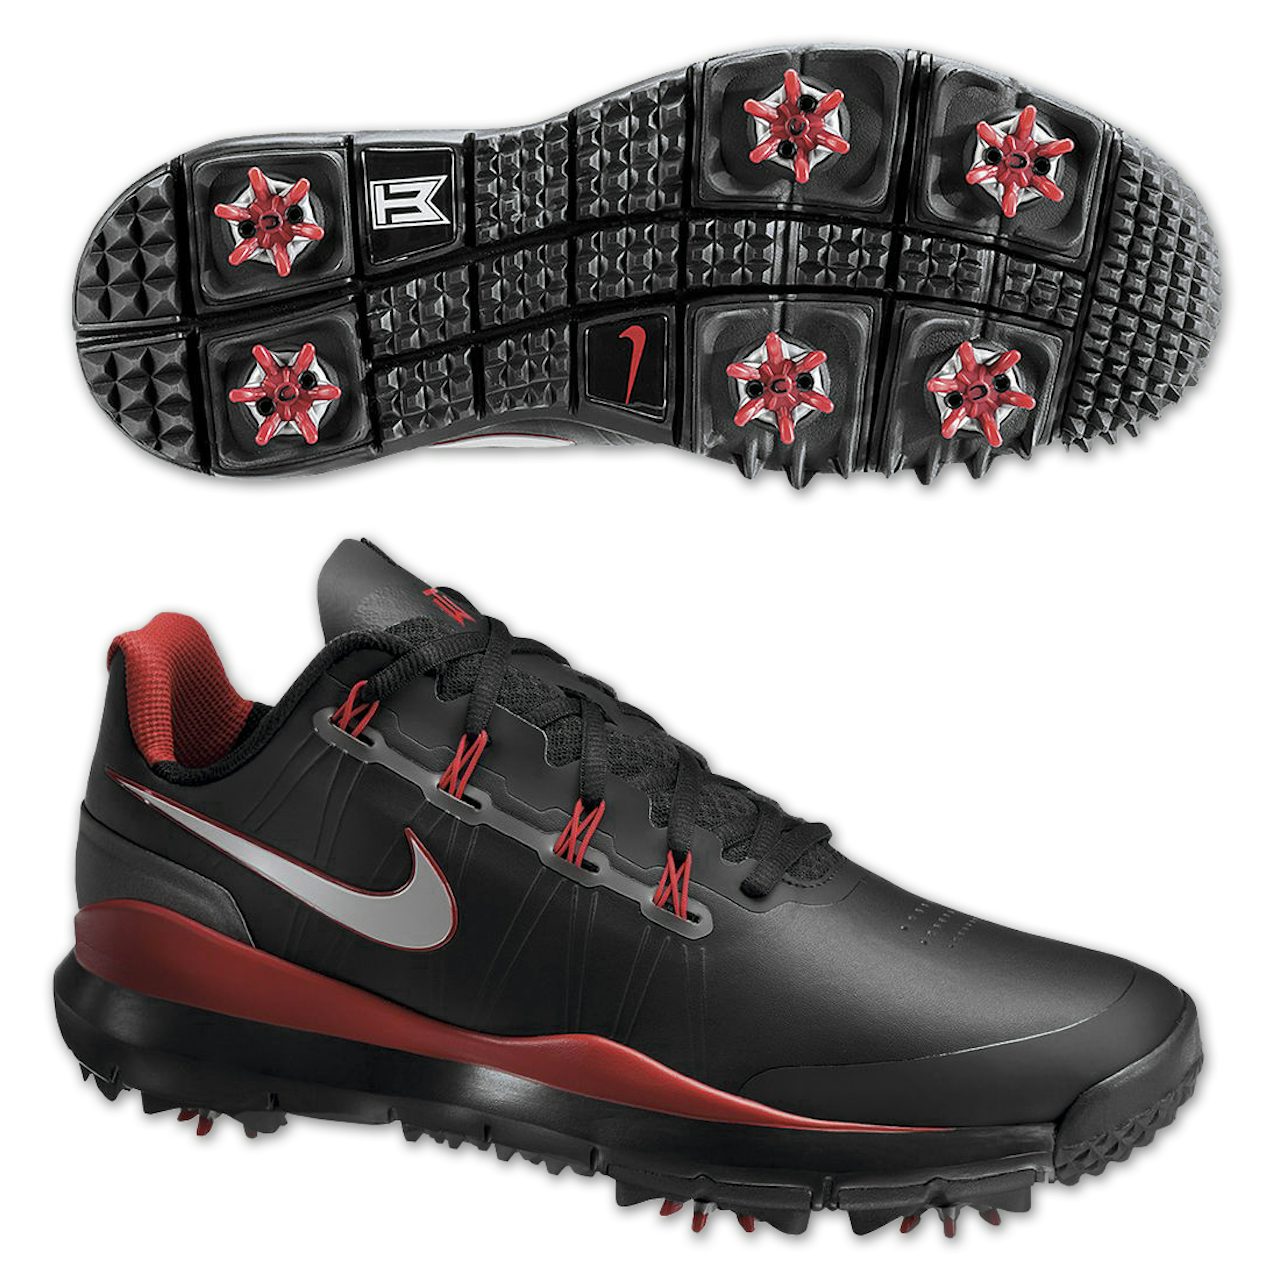 Tiger Woods 2014 Nike Golf Shoes Black